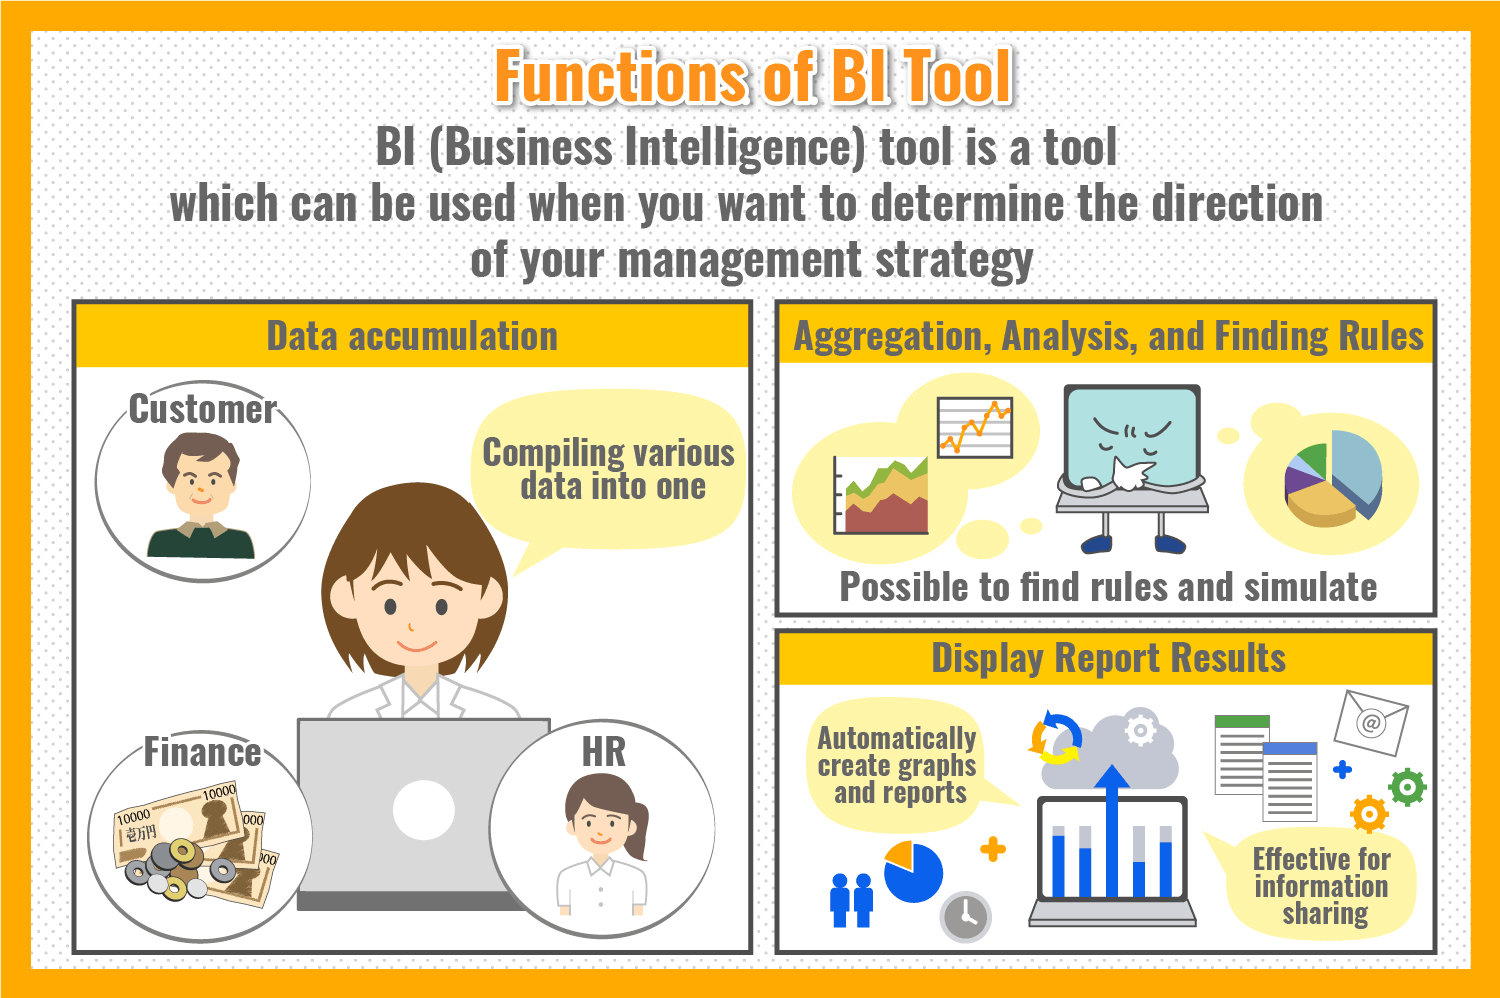 Functions of BI Tool